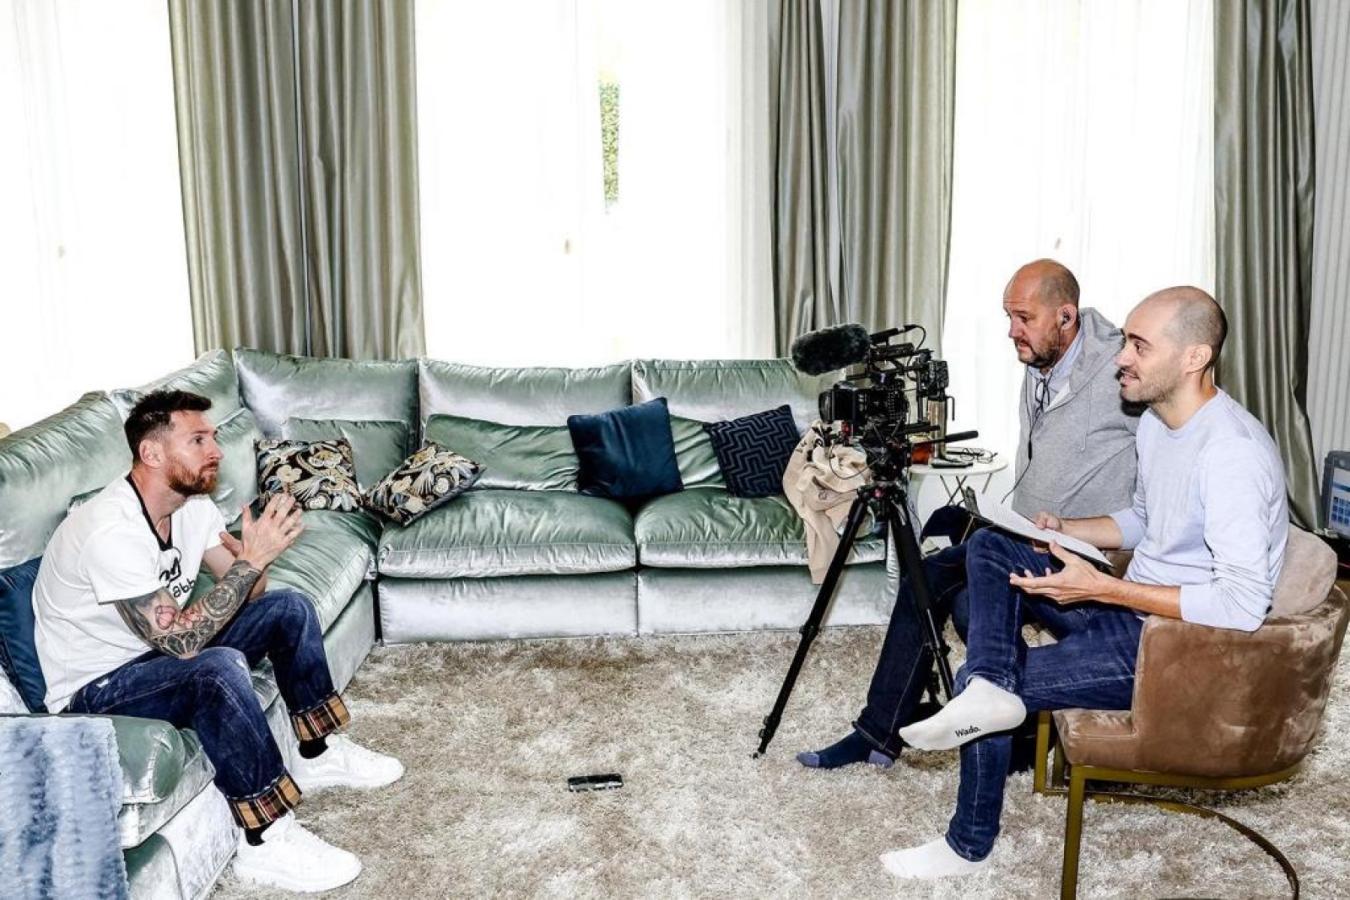 Imagen Torchut entrevistó a Lionel Messi descalzo en Francia en 2021